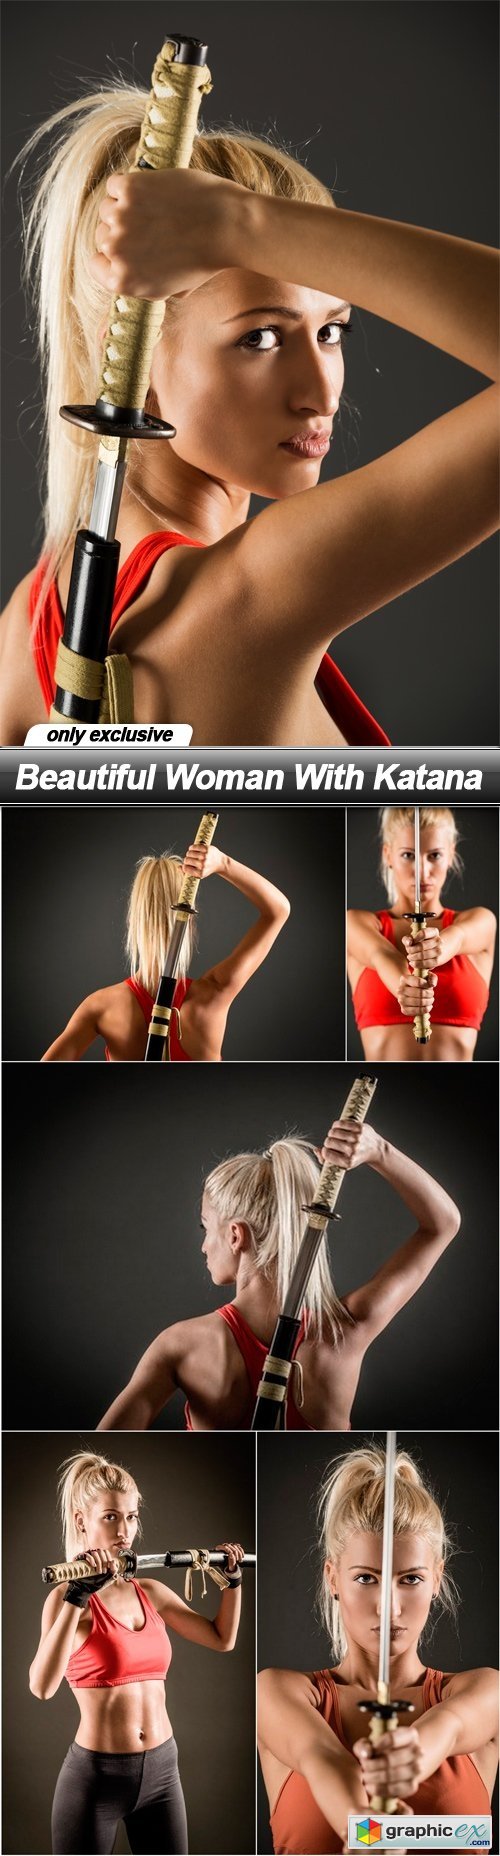 Beautiful Woman With Katana - 6 UHQ JPEG